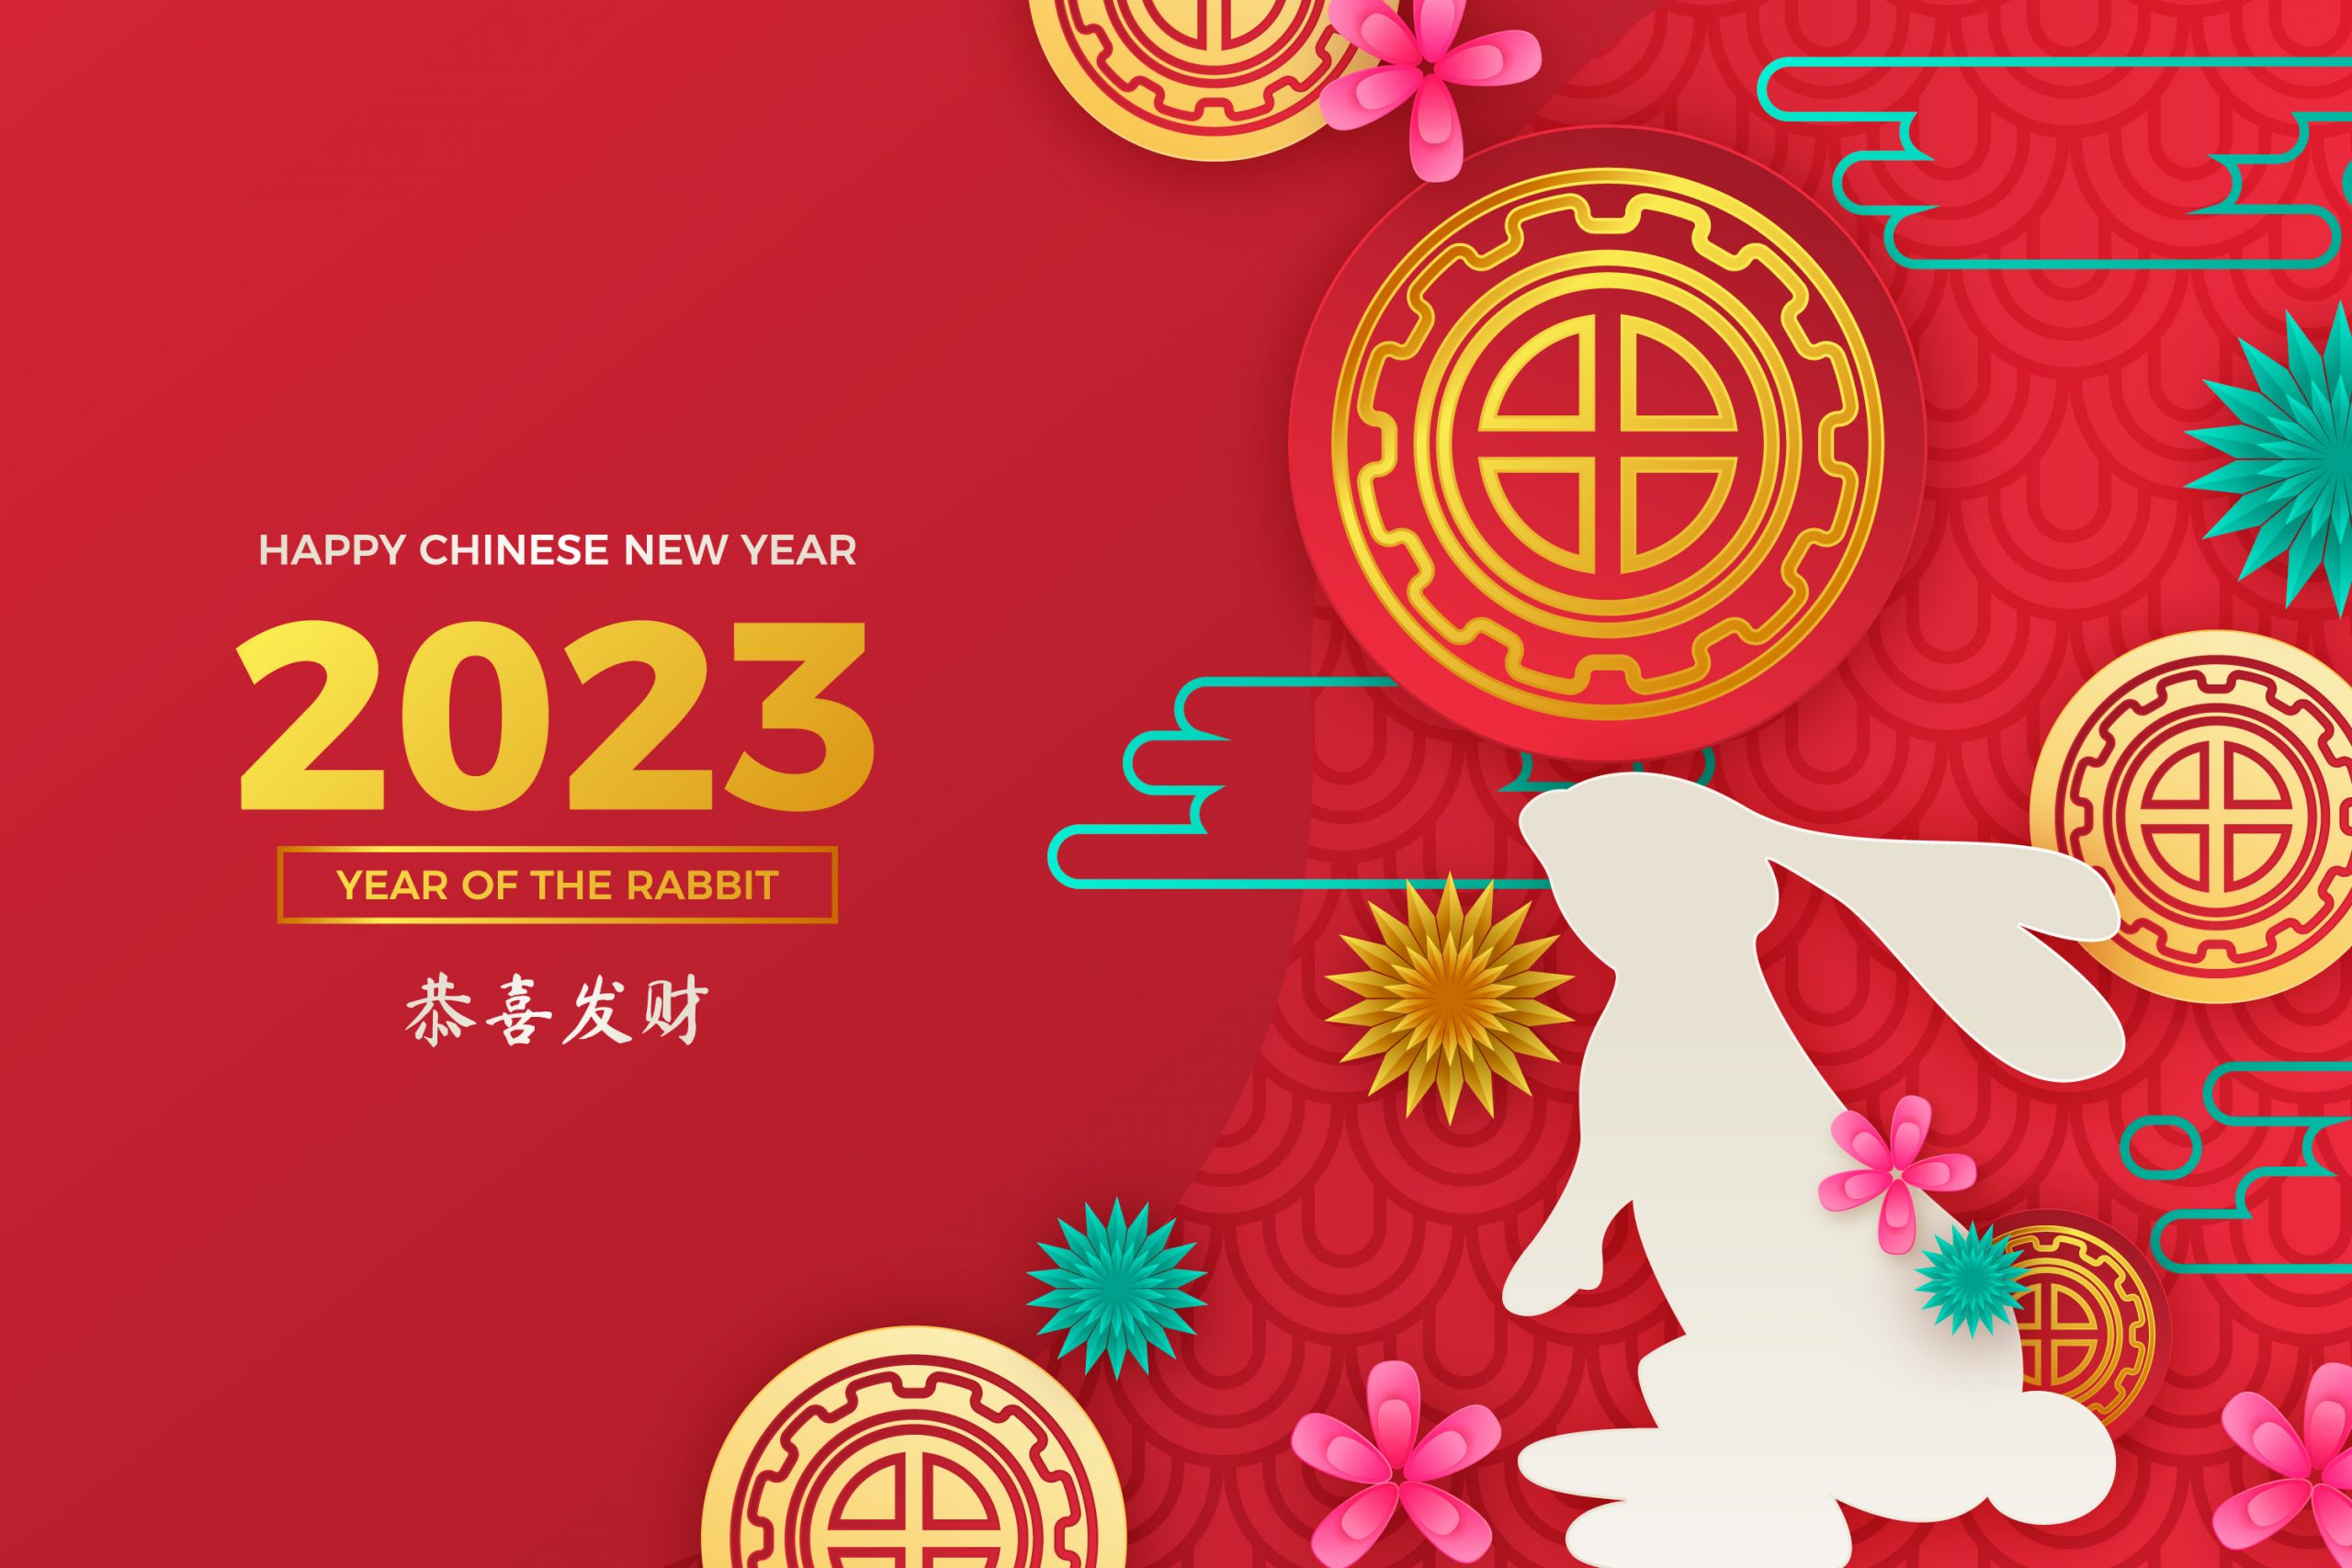 пубг китайский новый год фото 47